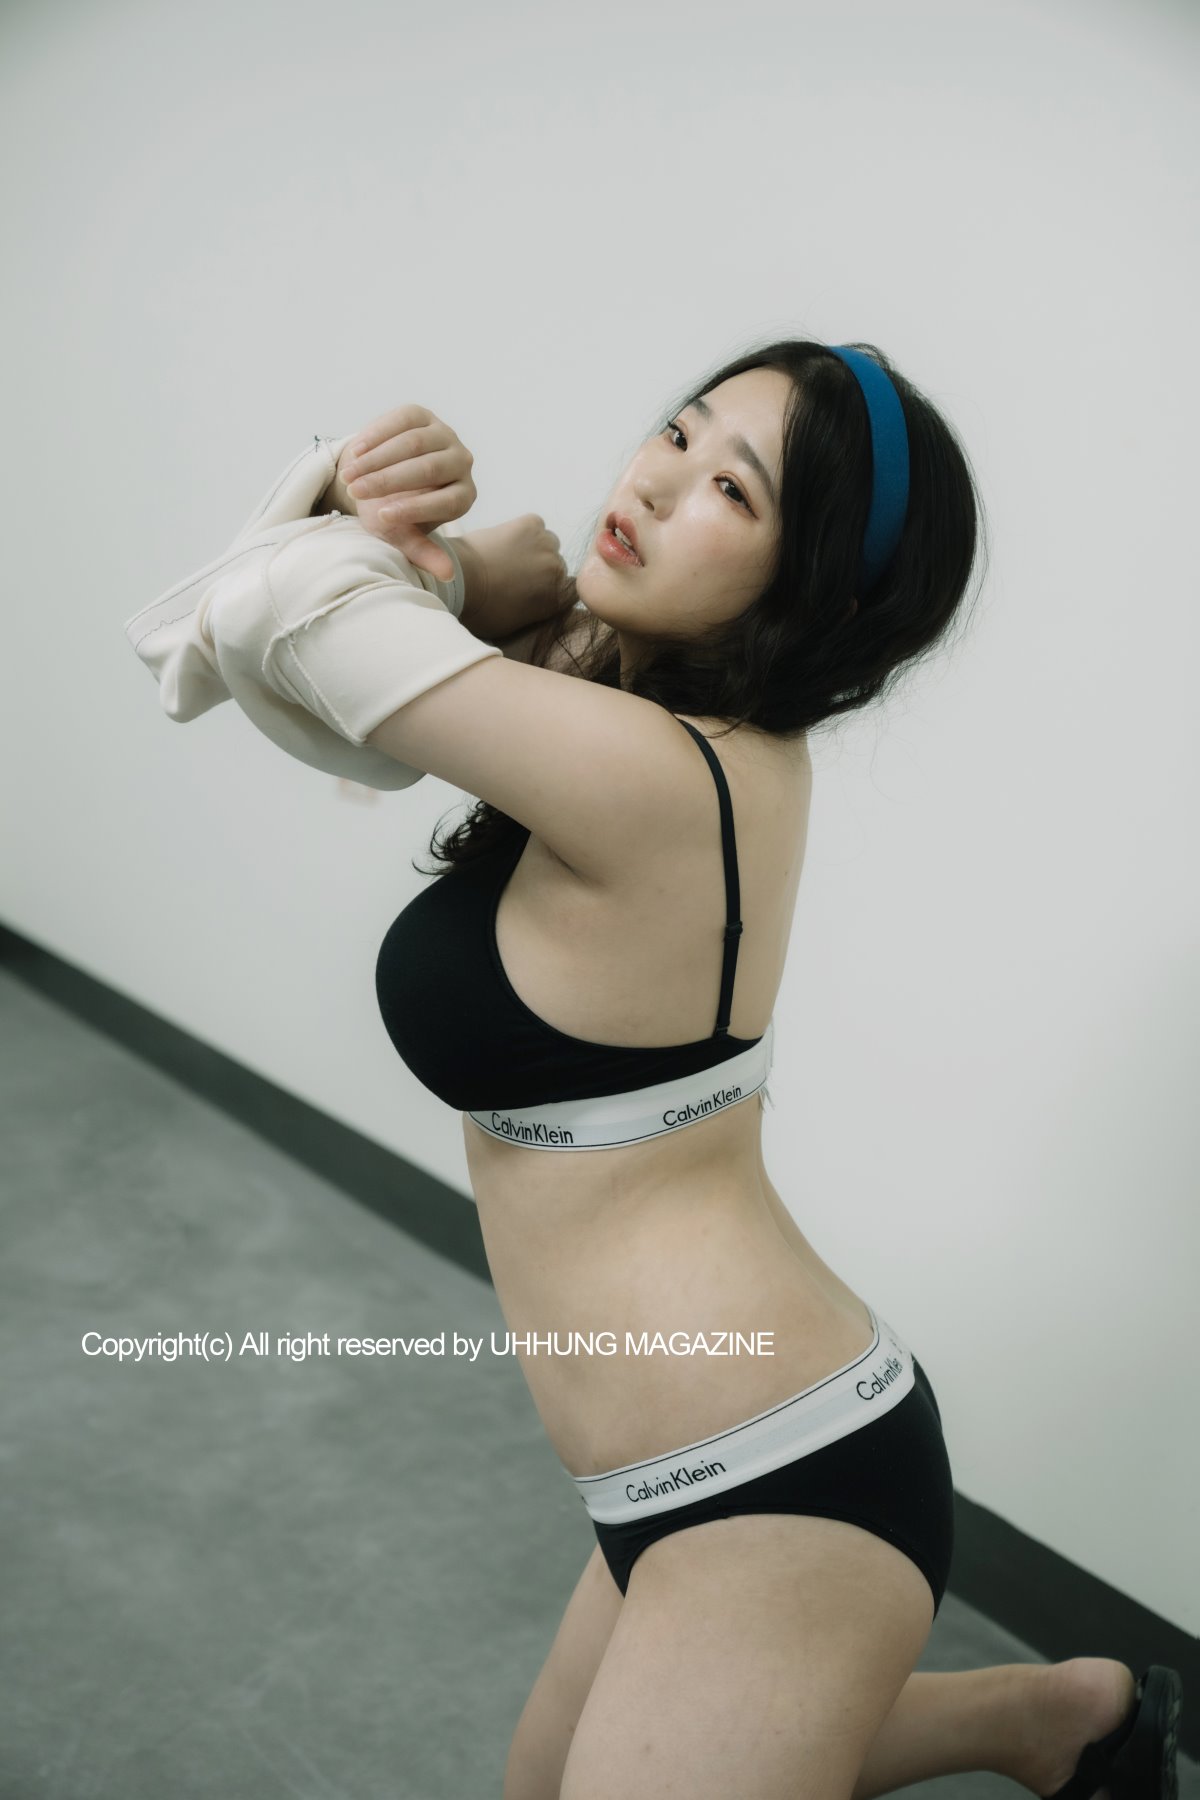 UHHUNG MAGAZINE Jenn Vol 1 Taekwondo Part1 0008 6779281904.jpg